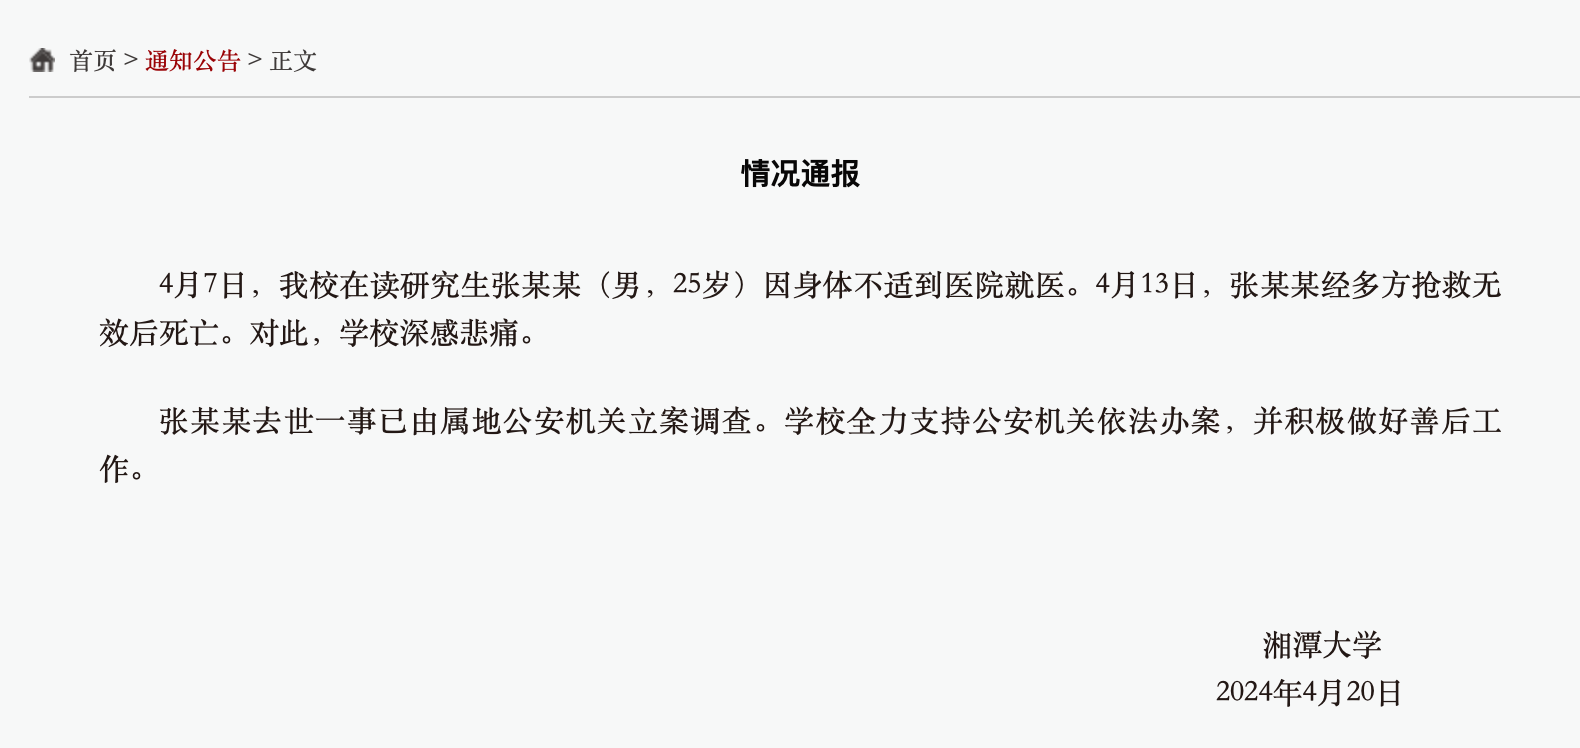 万向登录：网传“湘潭大学学生被投毒死亡”？警方通报